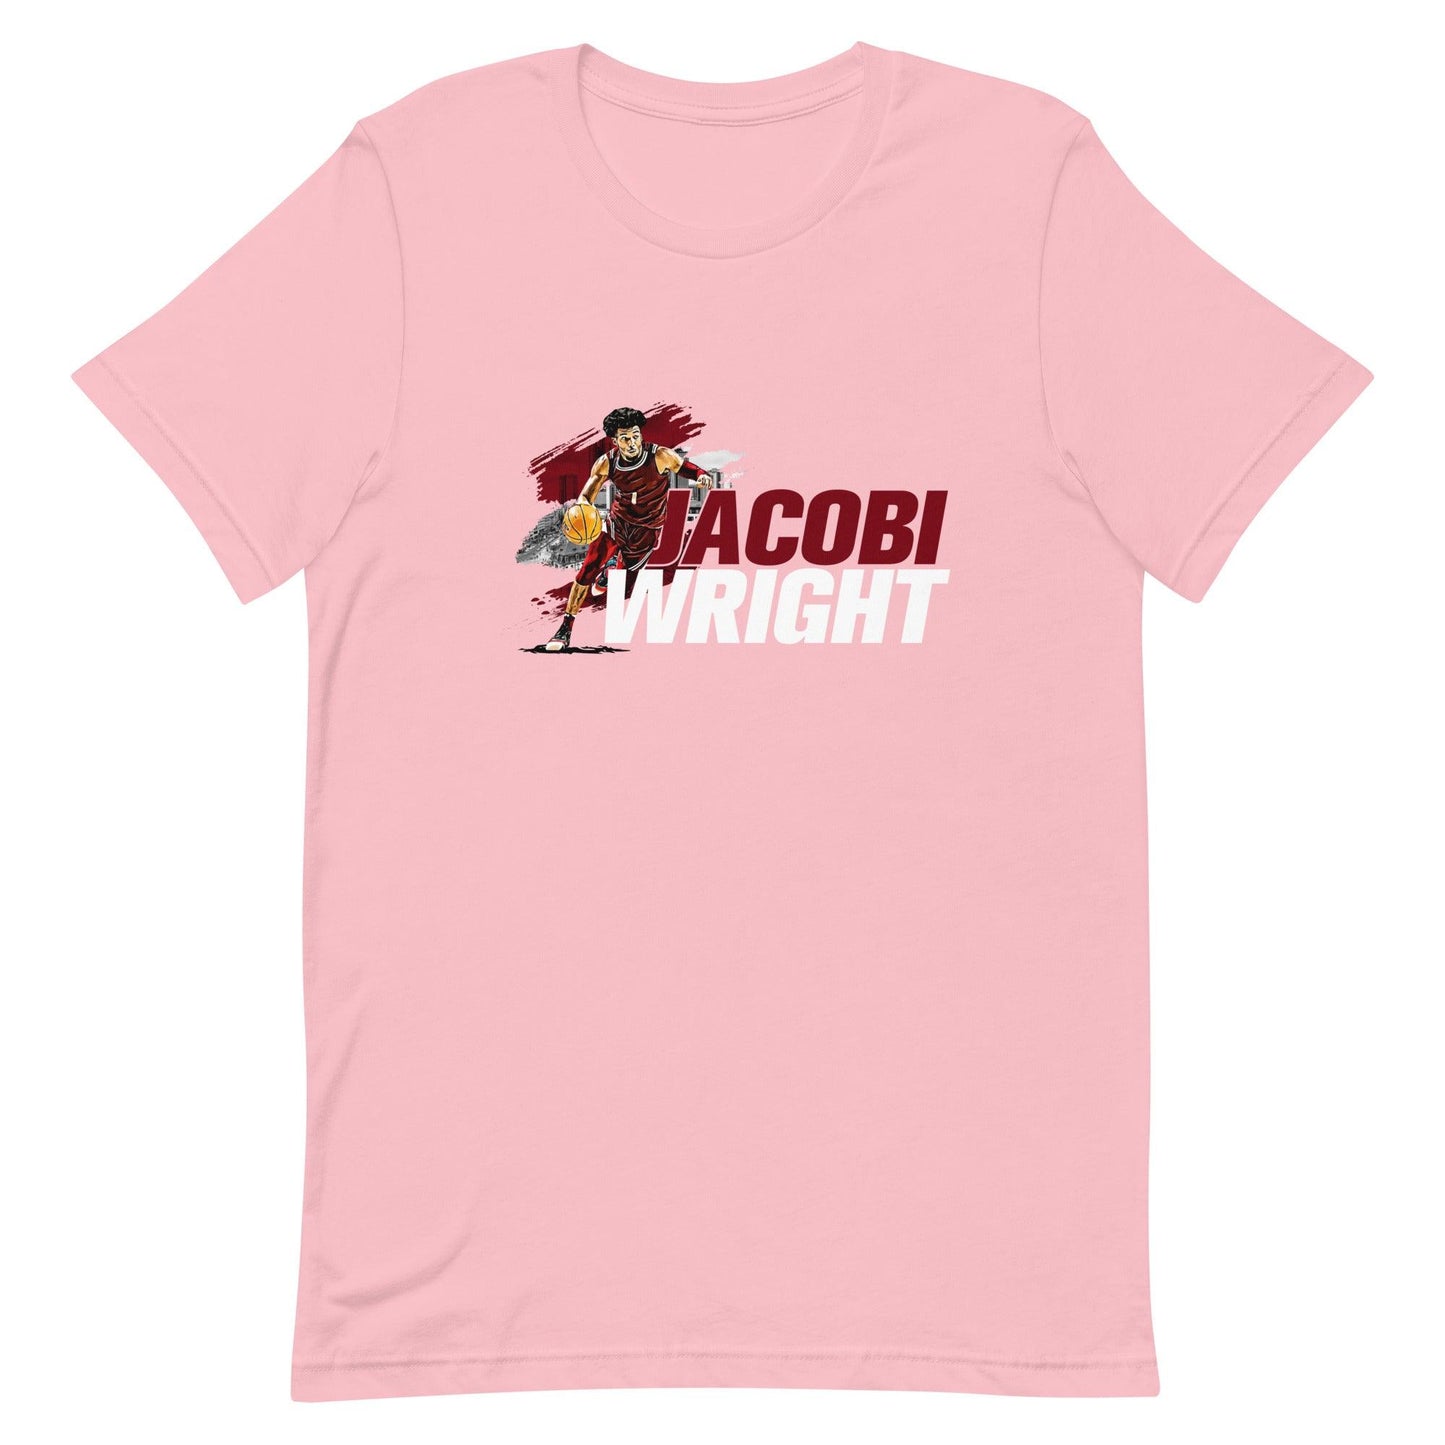 Jacobi Wright "Gameday" t-shirt - Fan Arch